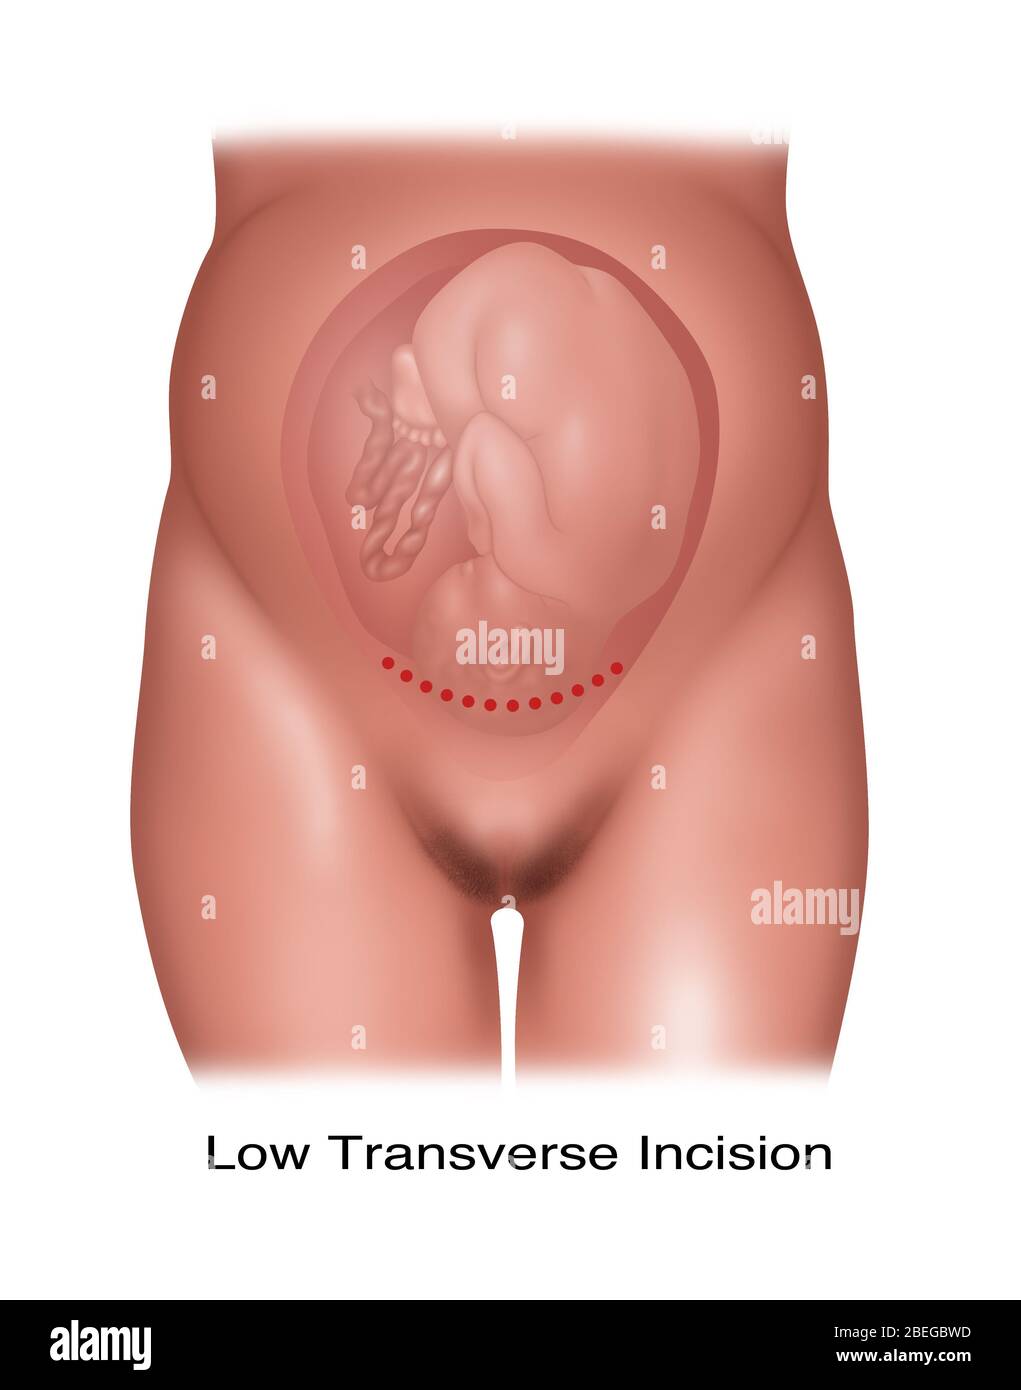 Ilustración de una incisión cesariana transversal baja utilizada para administrar un feto con posición normal. Foto de stock